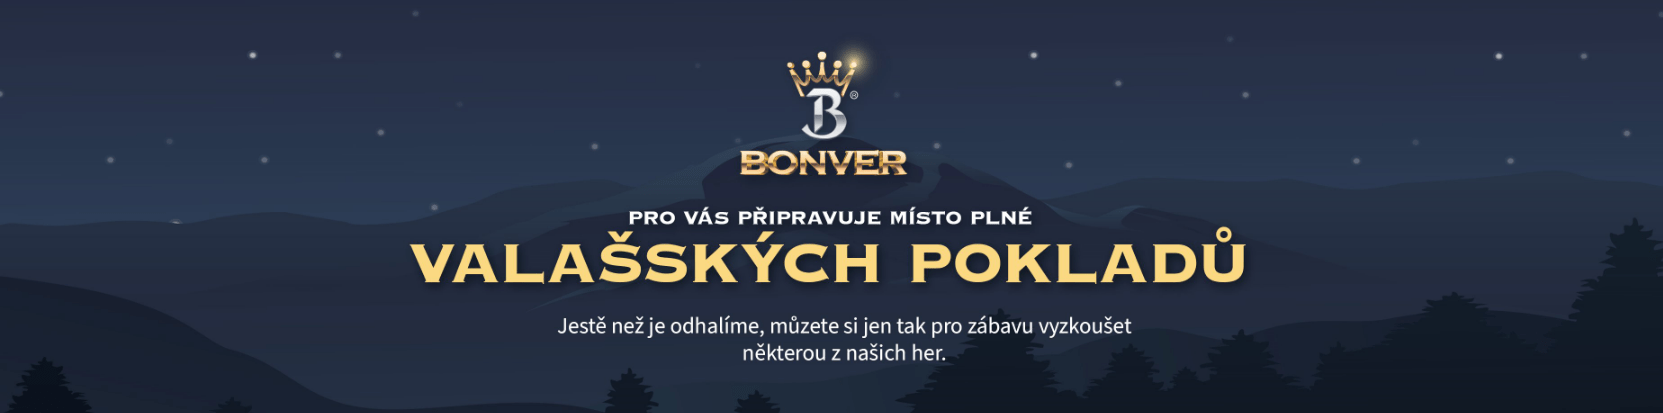 bonver připravuje online casino